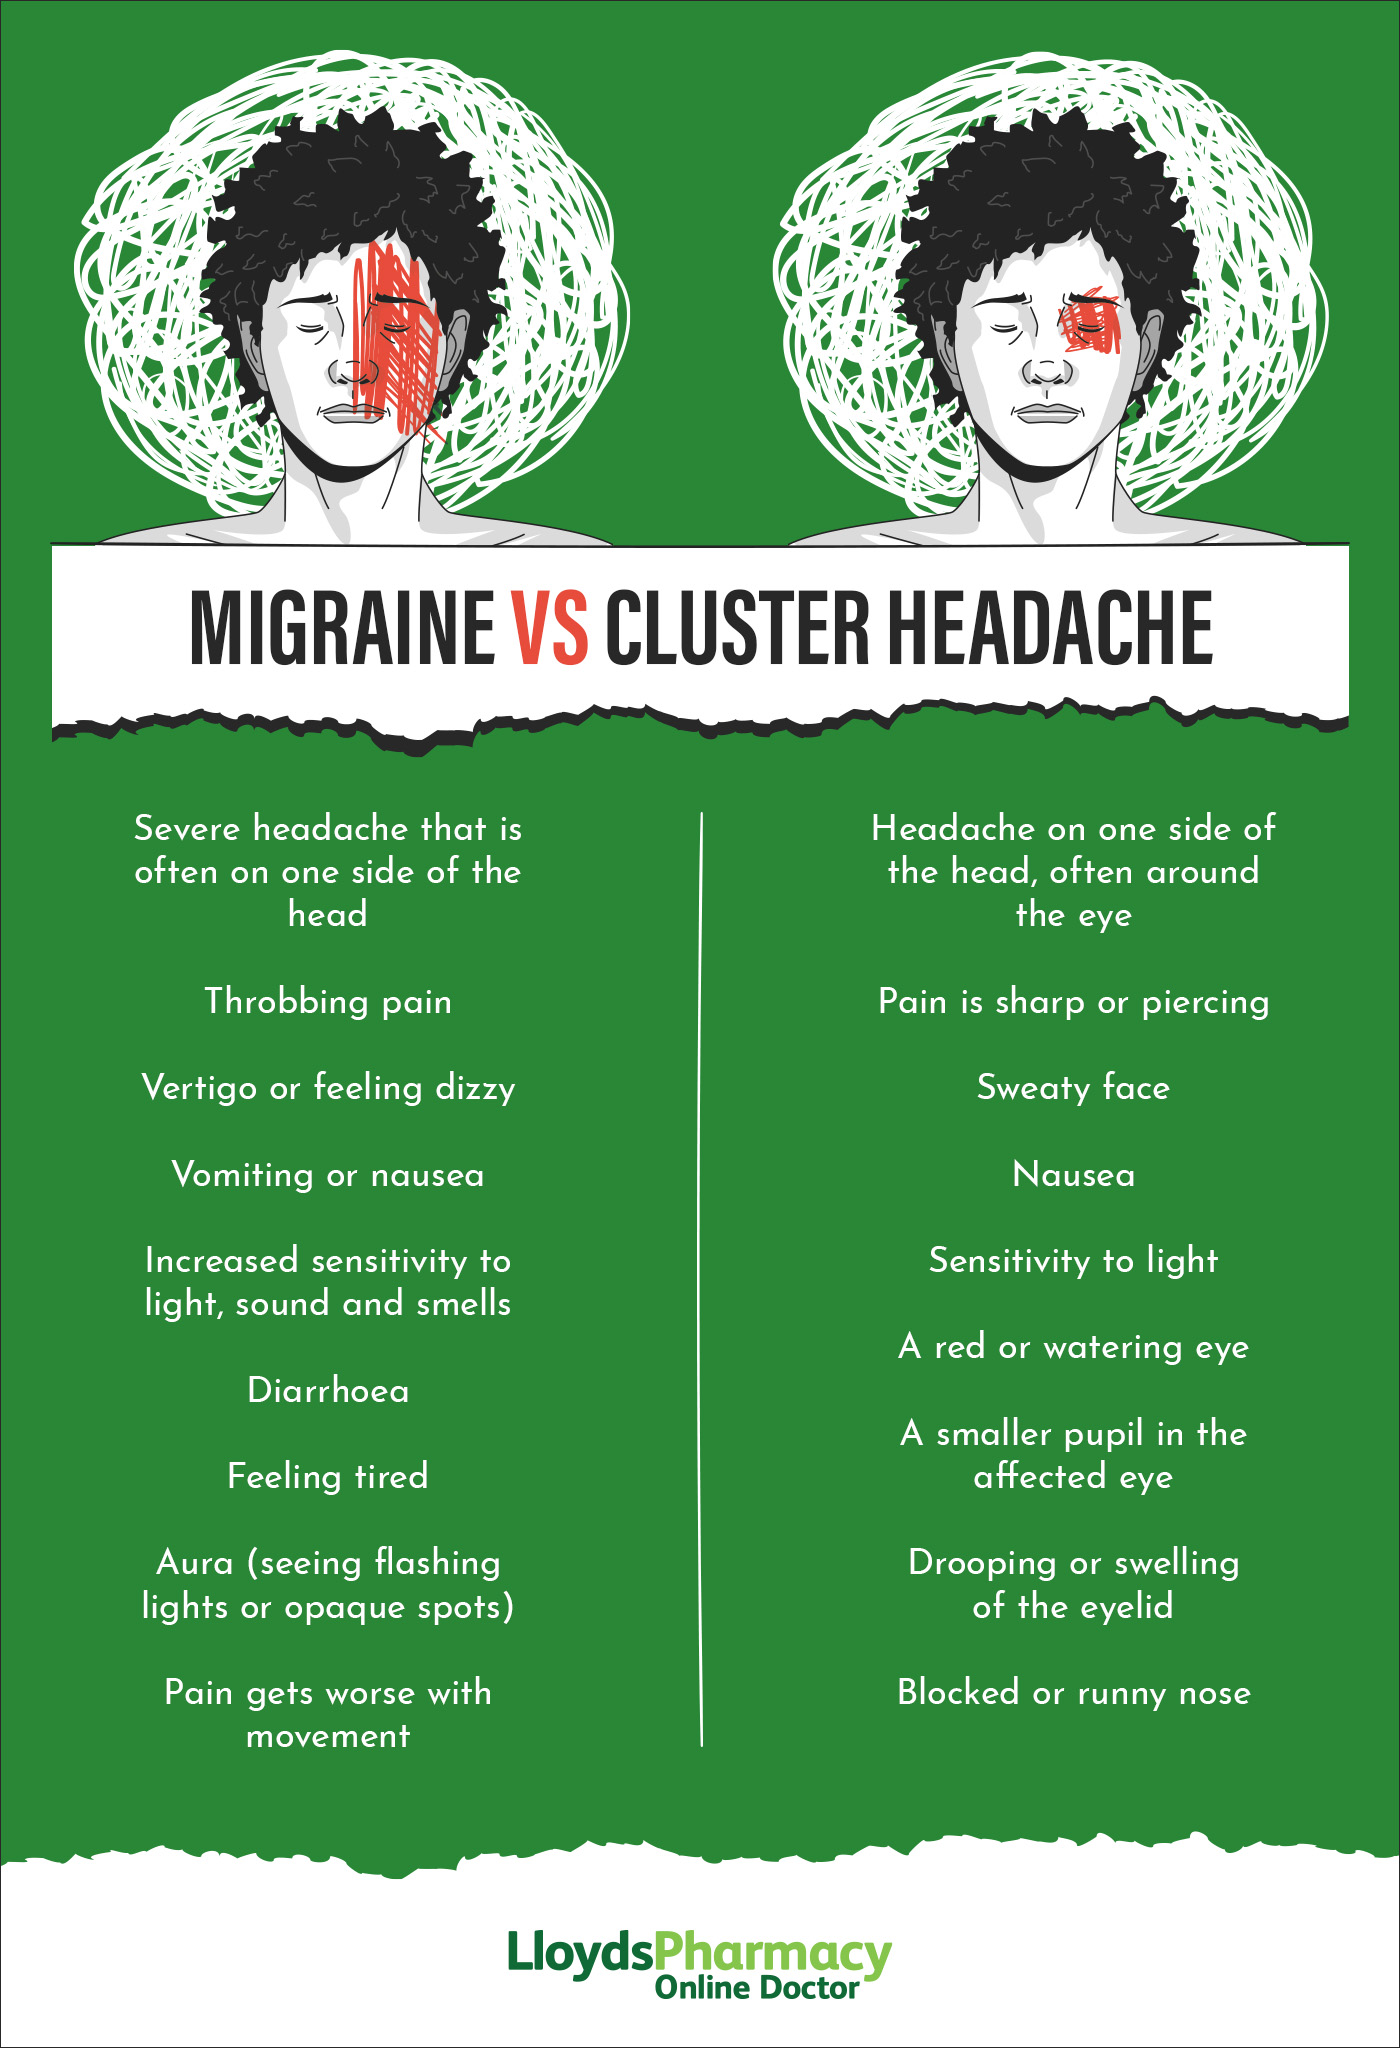 Migraine vs Cluster headache symptoms